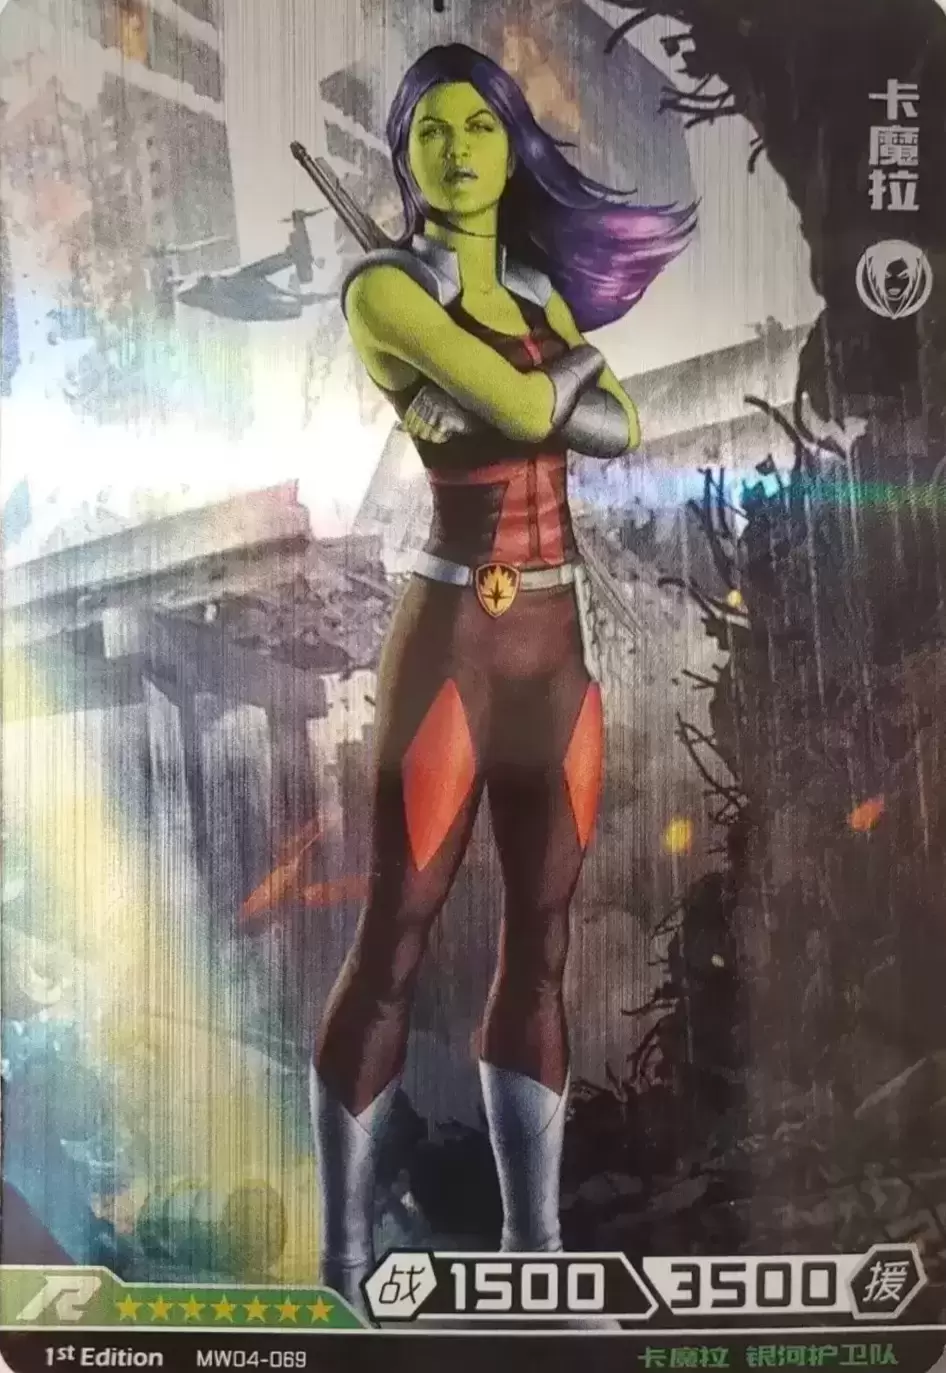 Kayou Marvel Hero Battle - Gamora